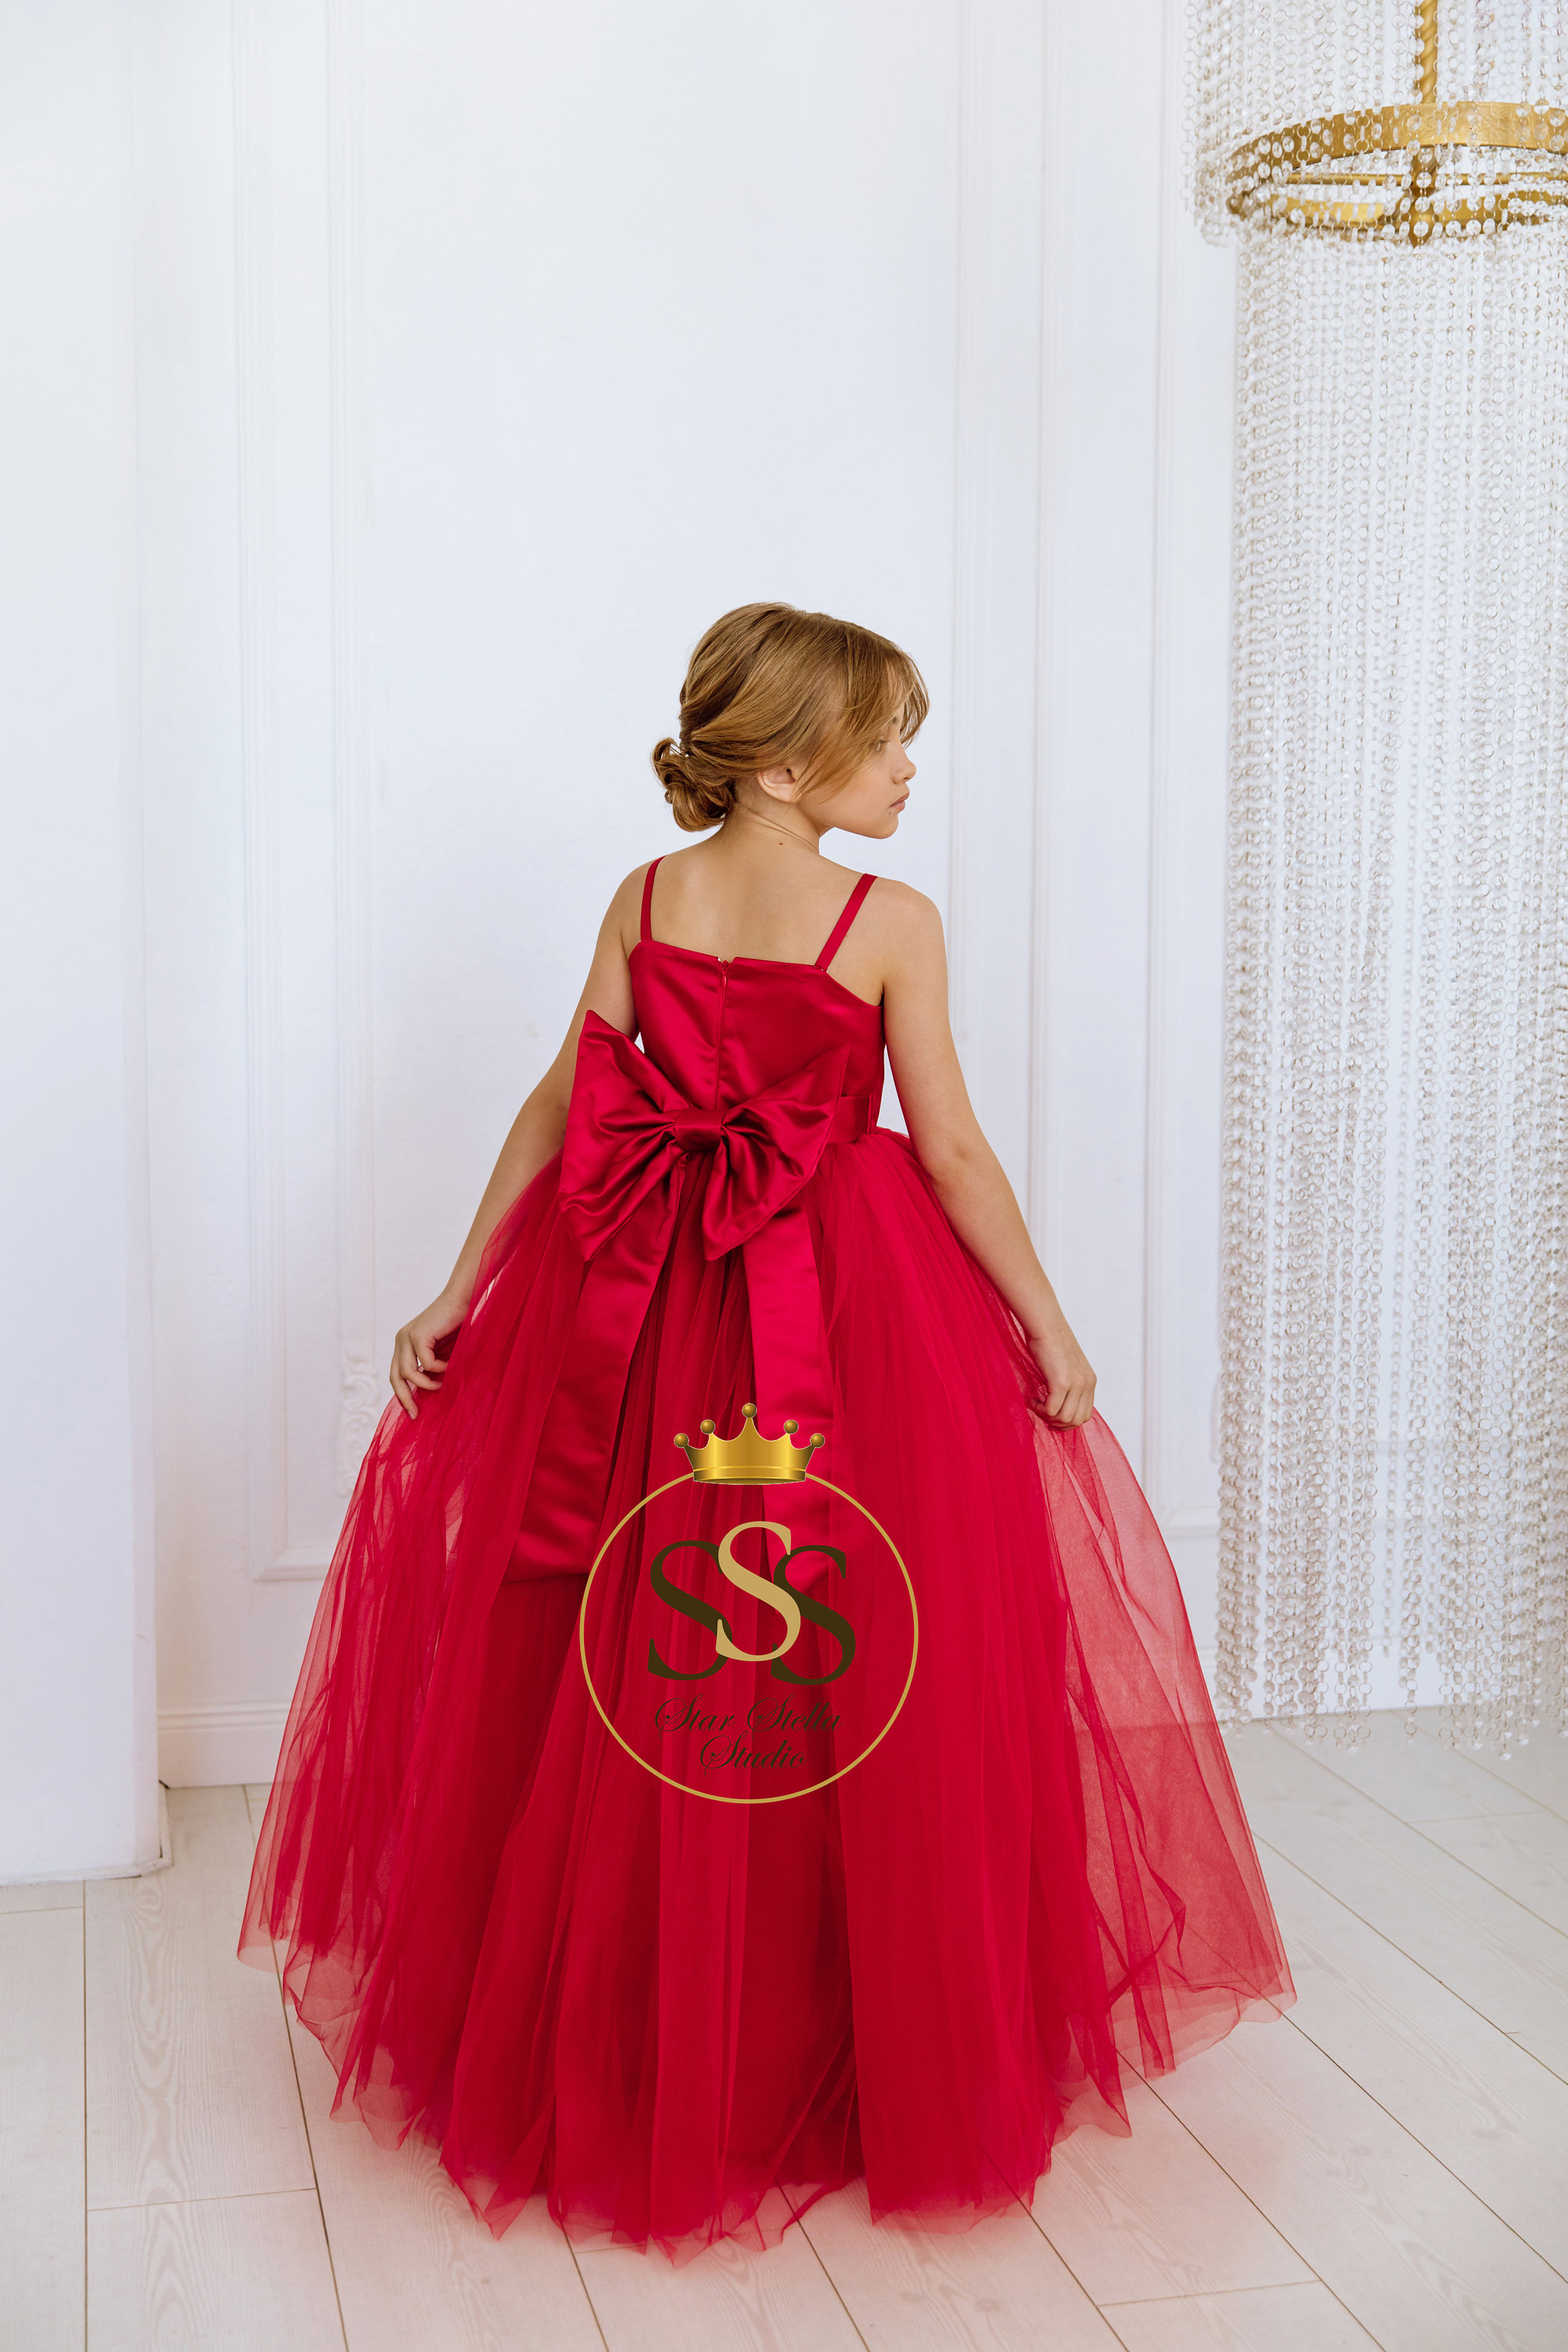 Red Flower Girl Dress Satin Flower Dress Tulle Dress Party - Etsy